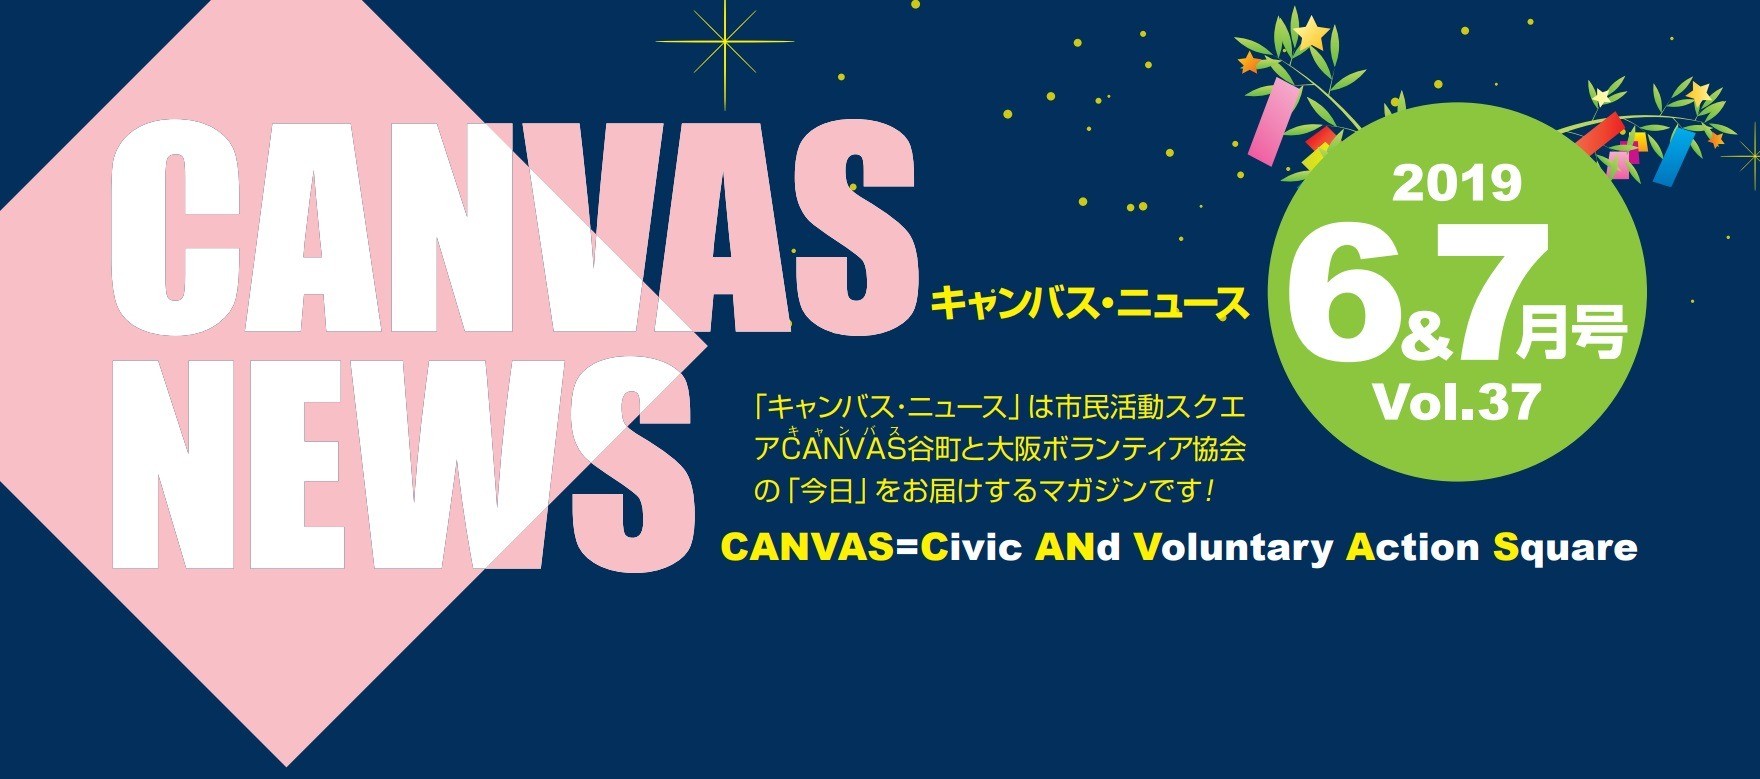 【CANVAS NEWS】2019年6・7月号